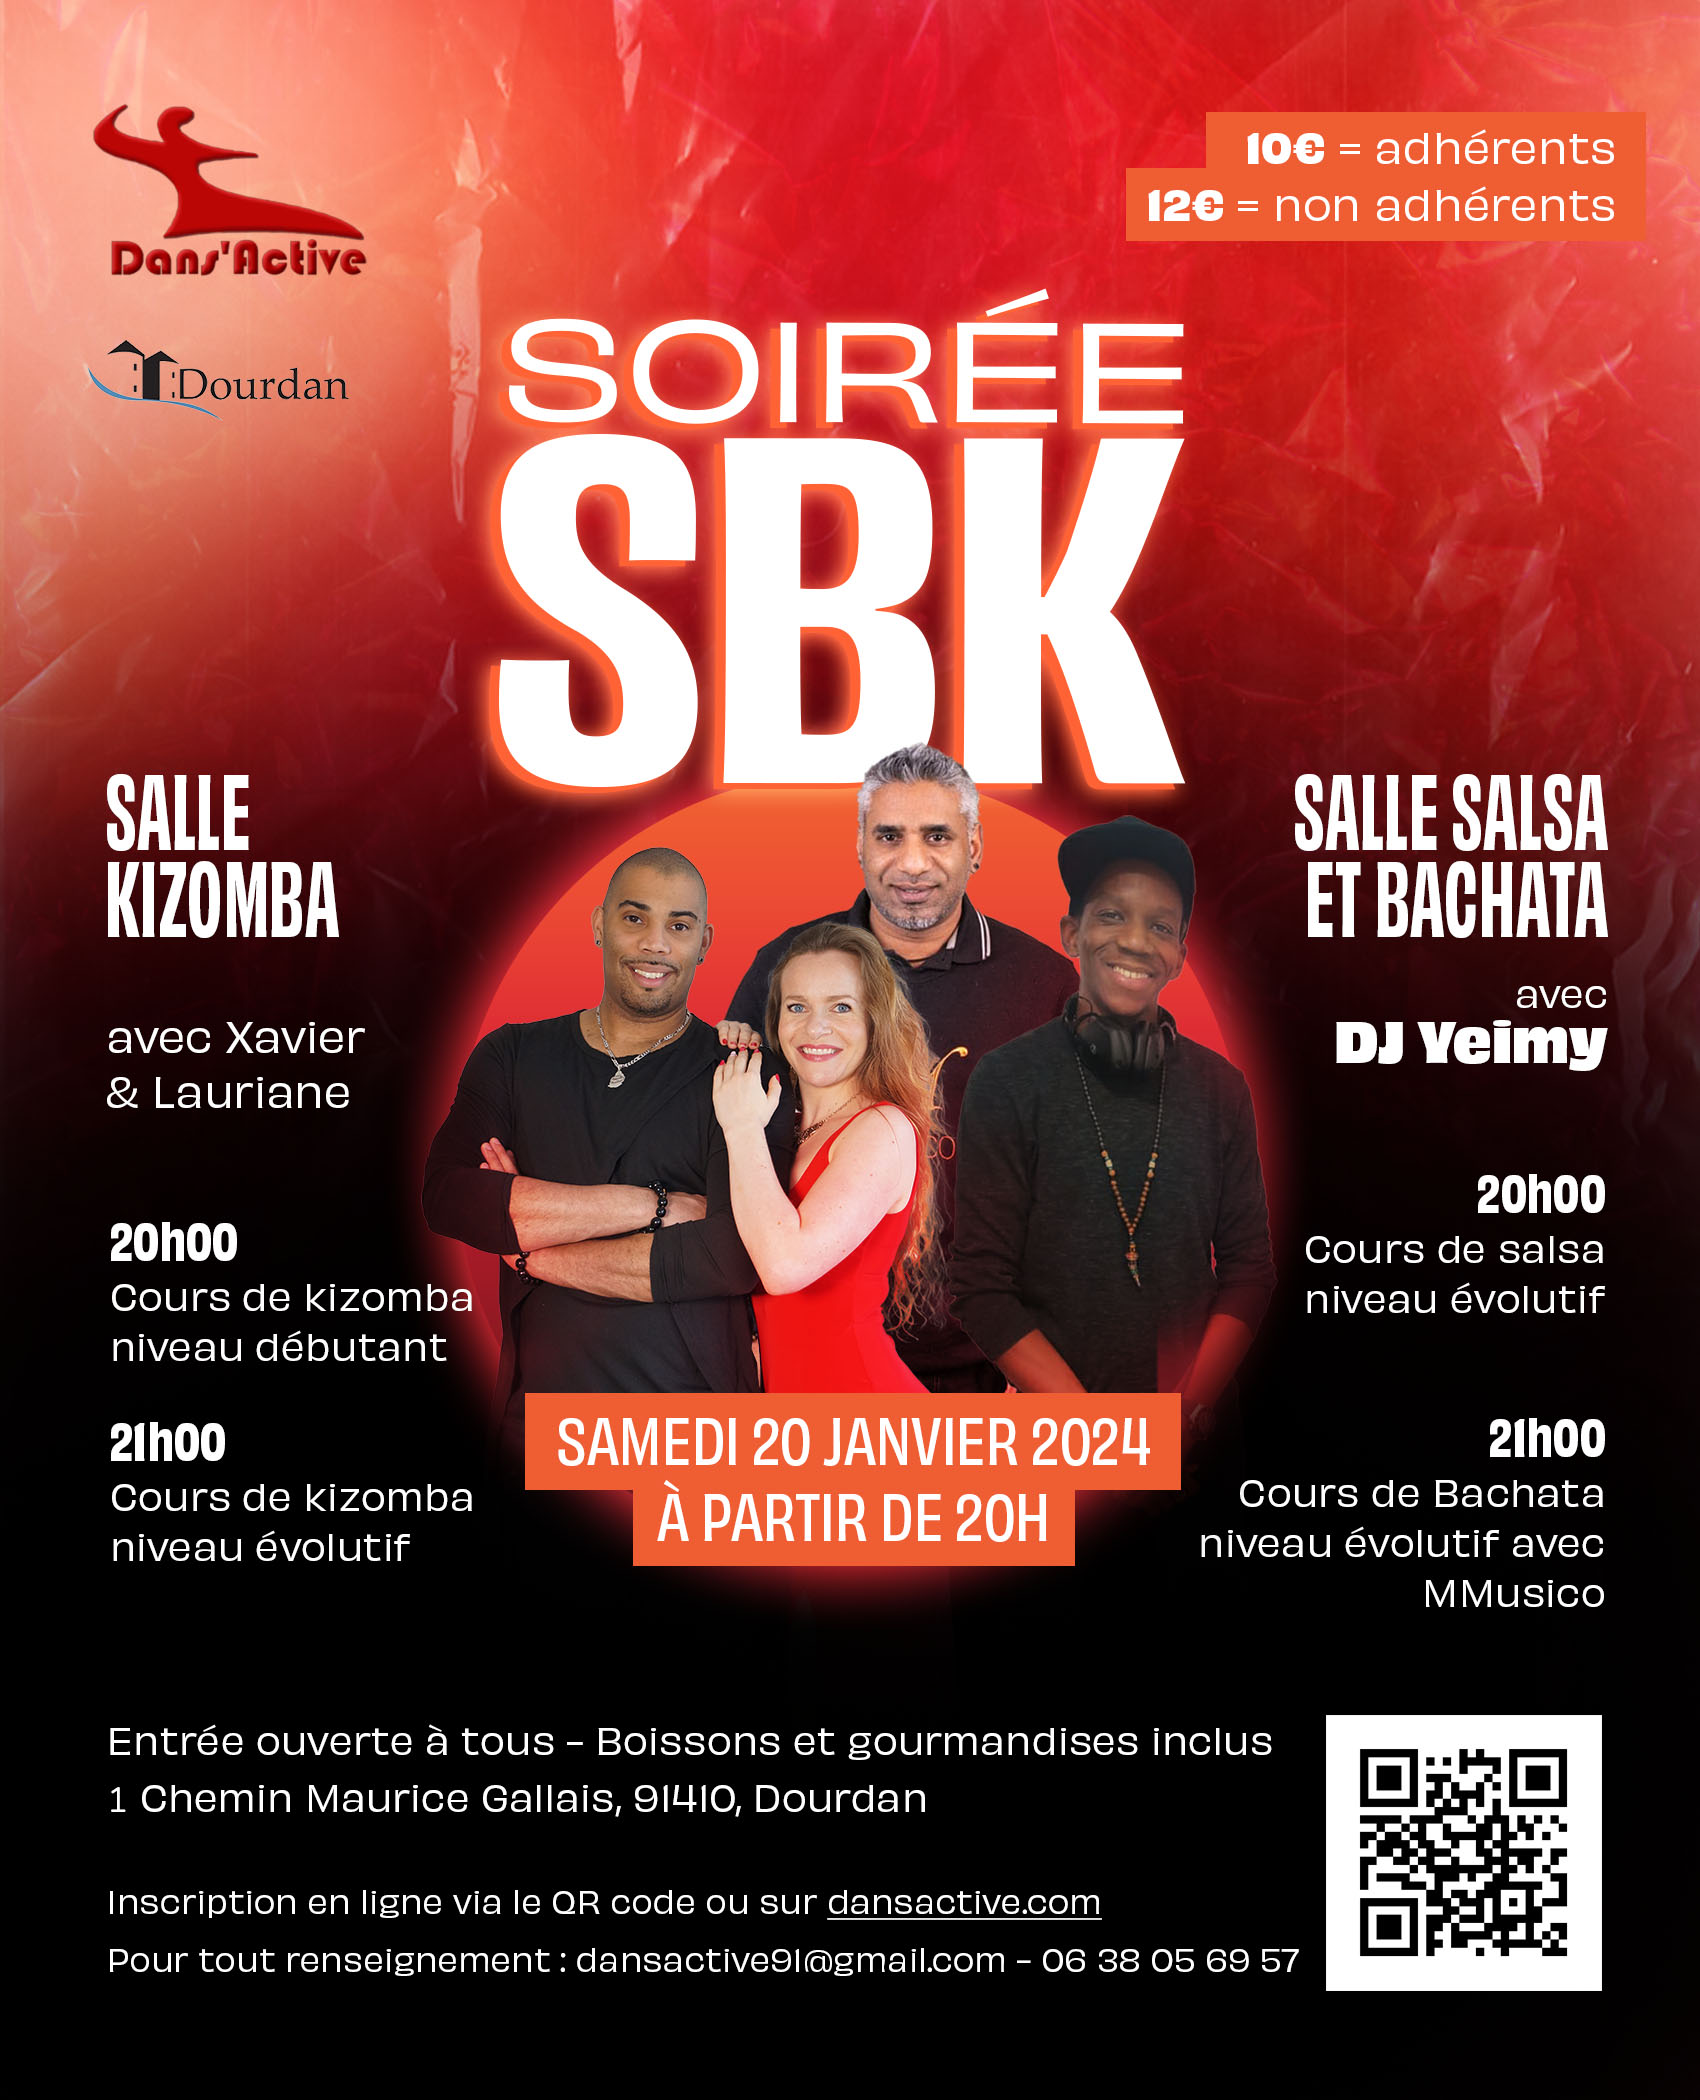 Soirée SBK le samedi 20 janvier avec DJ Yeimy. Cours de salsa bachata et kizomba avant soirée. 1 salle salsa bachata 1 salle kizomba